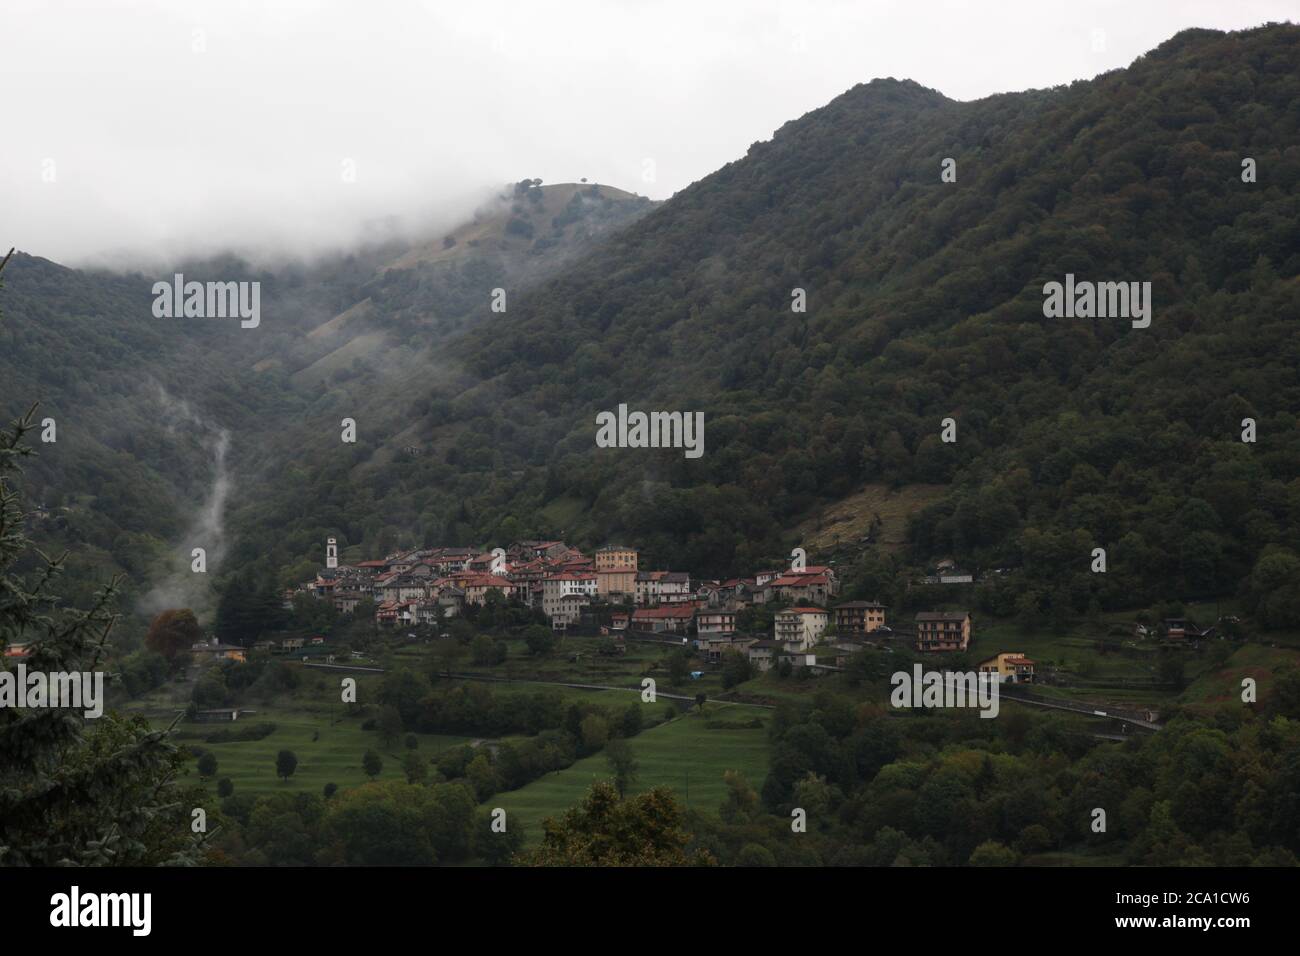 Casima, Canton Ticino (TI)/ Switzerland - September 29 2013: Vilage Casima in Canton Ticino, located in the valley Muggio on a foggy autumn day Stock Photo